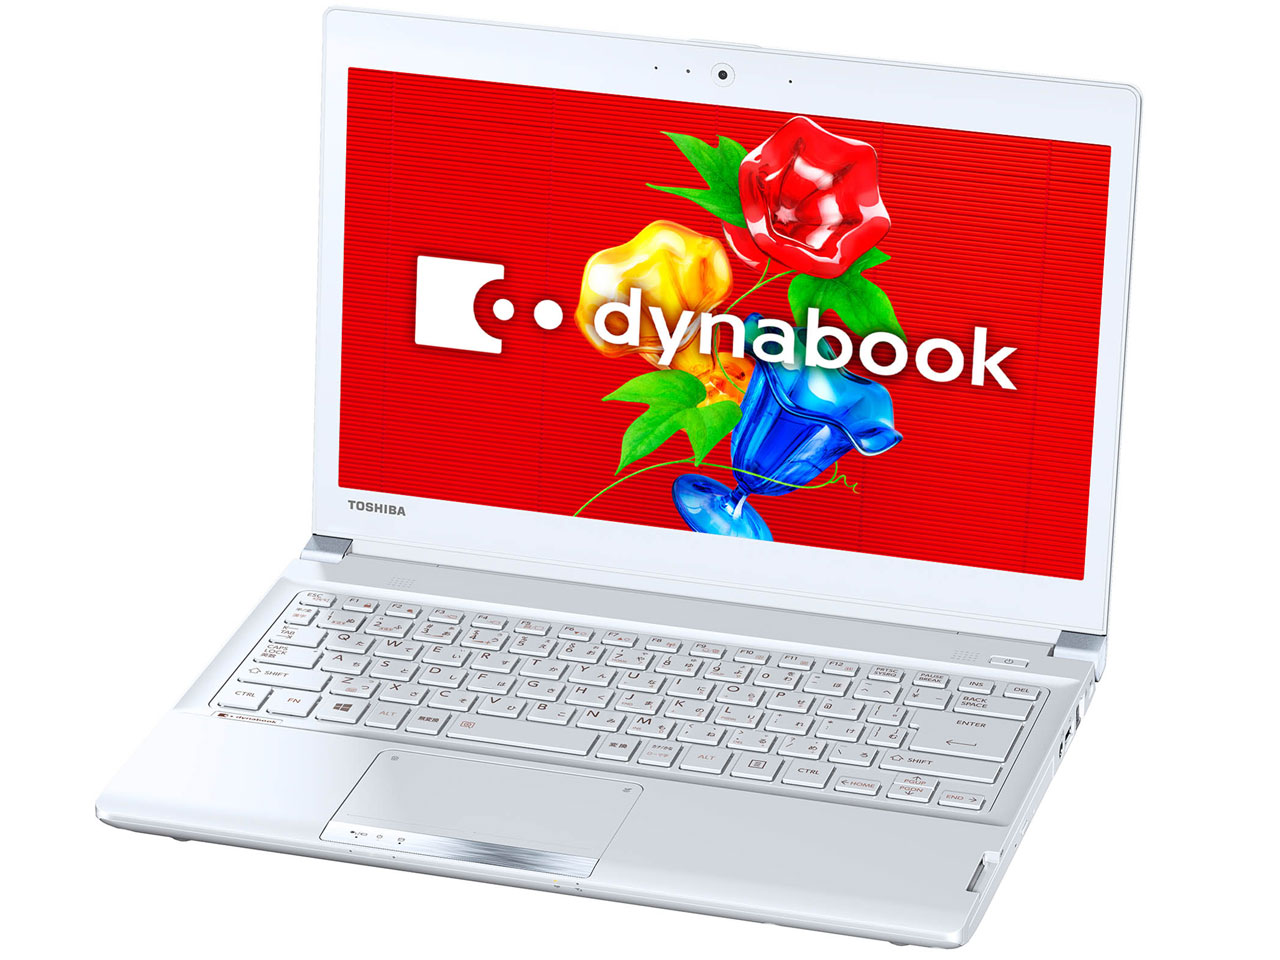 価格.com - 『本体 斜め』 dynabook R73 R73/37MW PR73-37MSXW [プレシャスホワイト] の製品画像